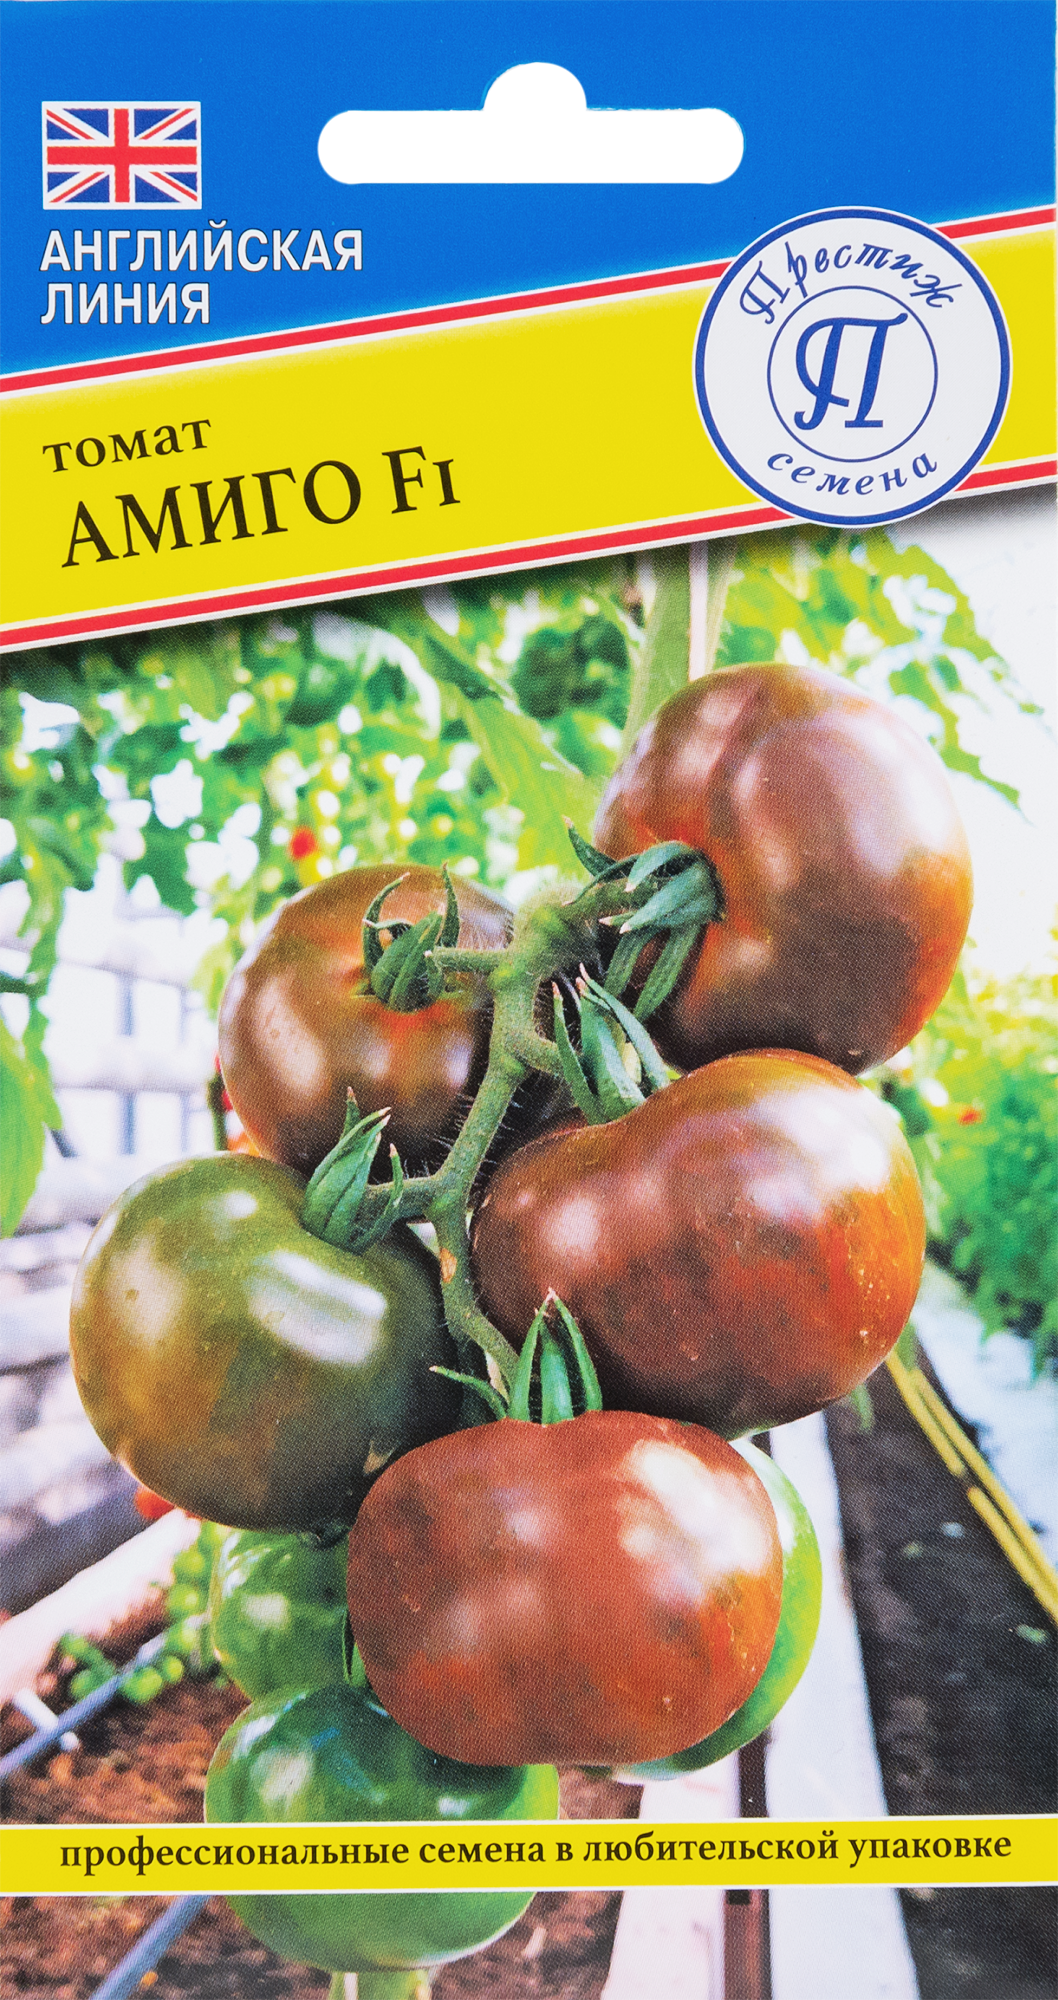 Семена Томат «Амиго» F1 в Липецке – купить по низкой цене винтернет-магазине Леруа Мерлен